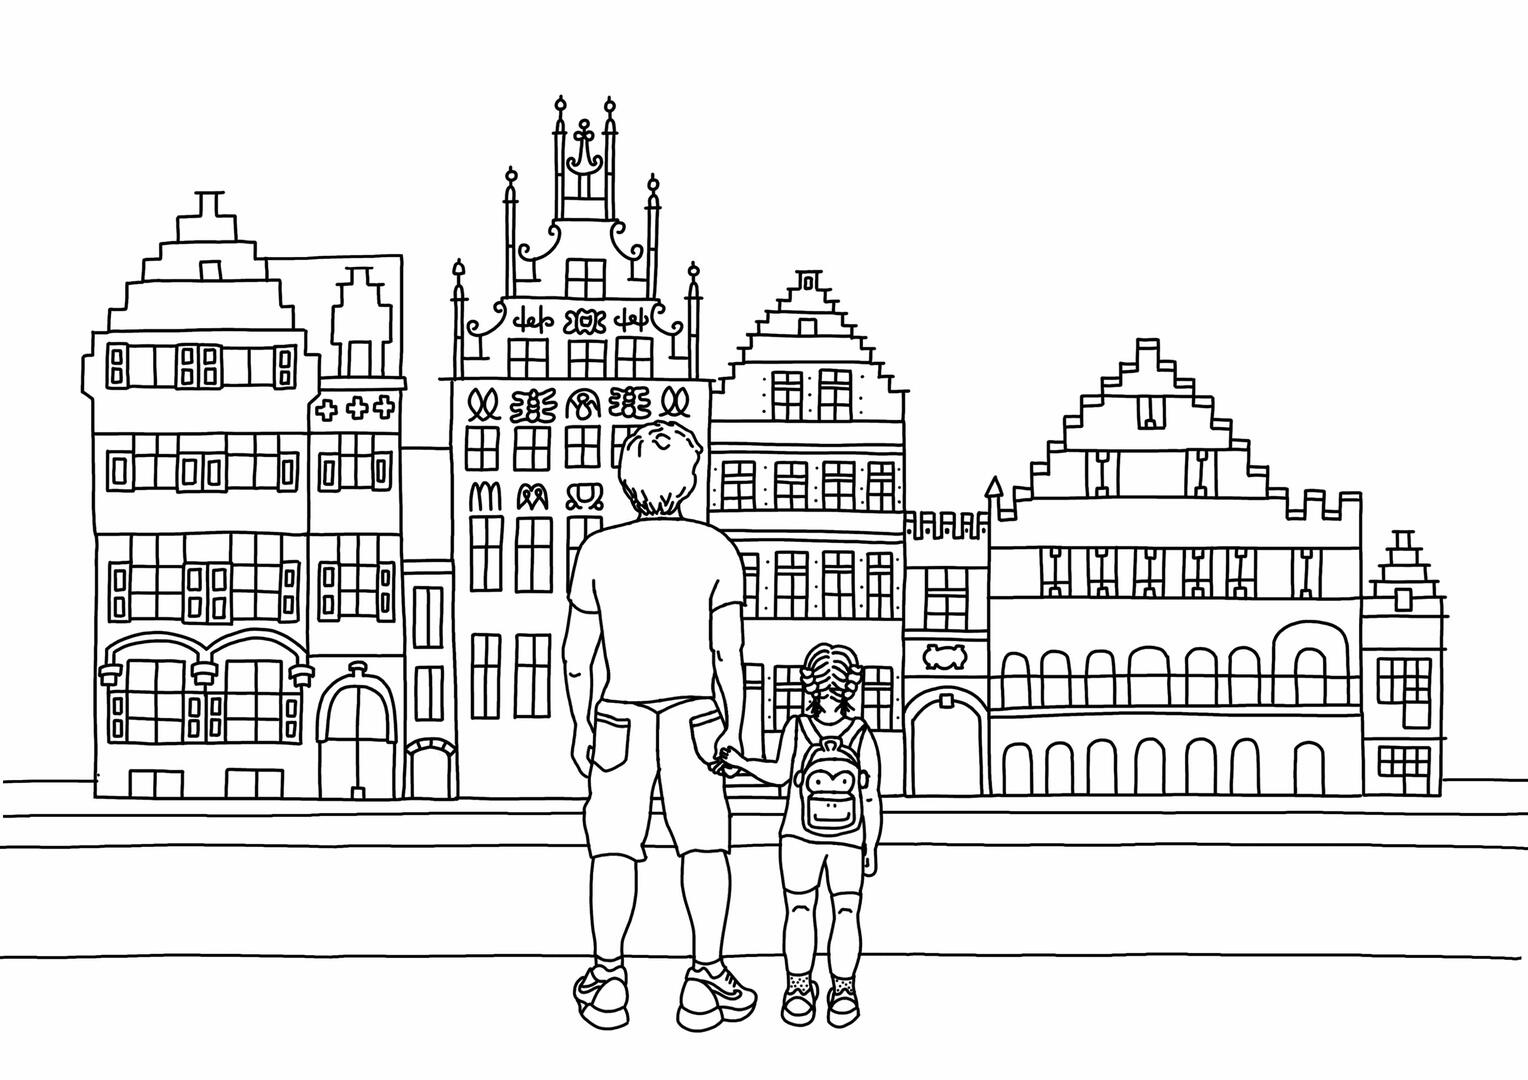 tekening van gebouwen in Gent en 2 personen die ernaar kijken